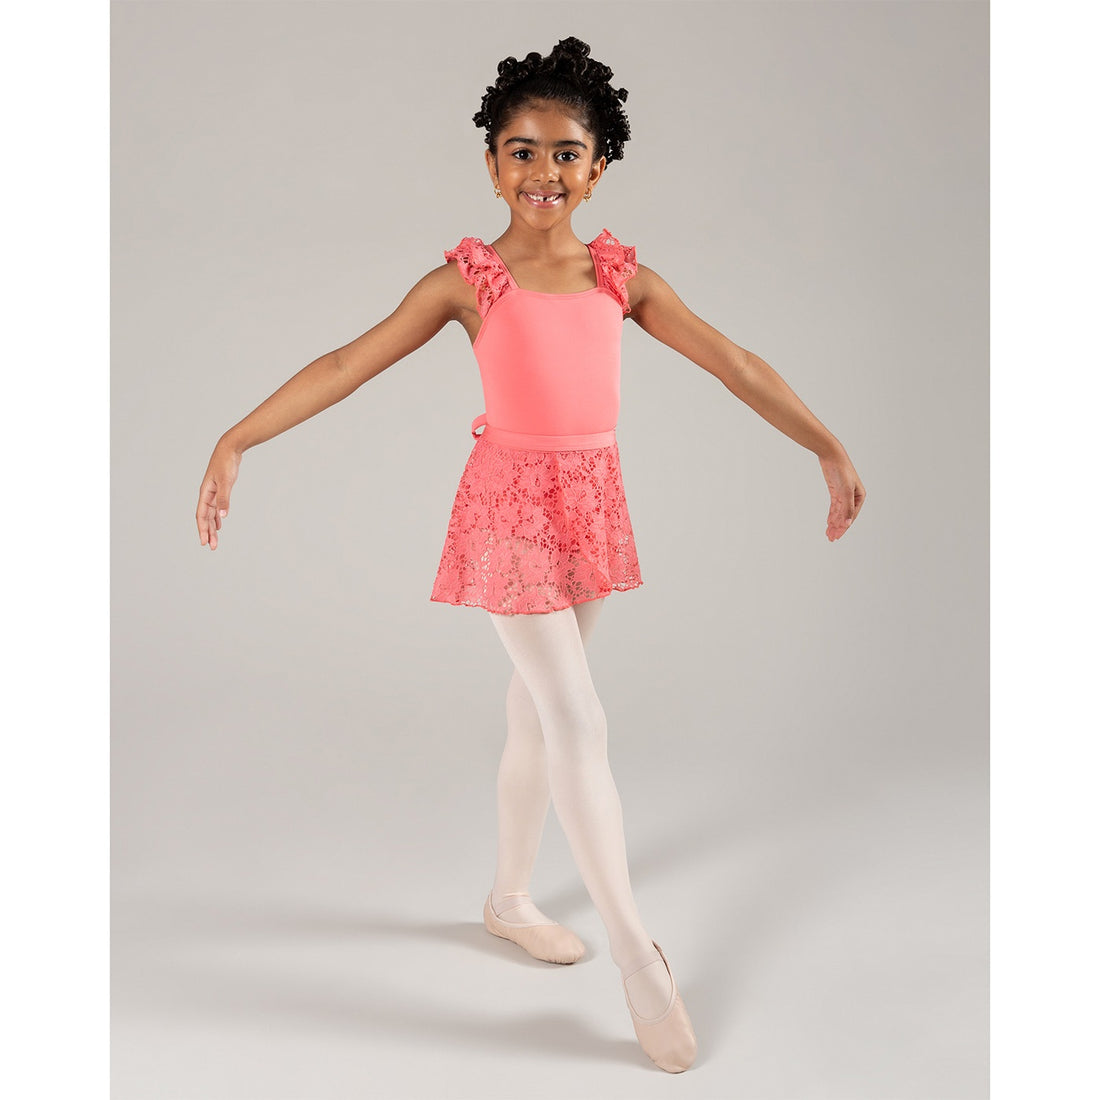 Swdarz Skirt Leggings for Girls Athletic Kids Dance Australia